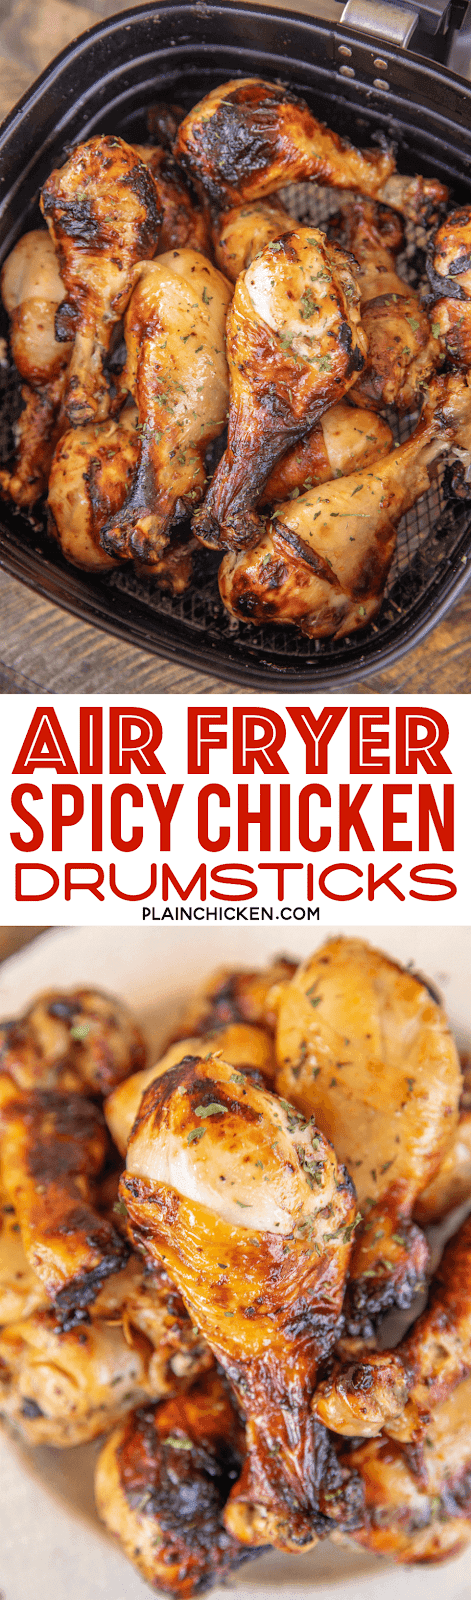 chicken drumsticks in air fryer